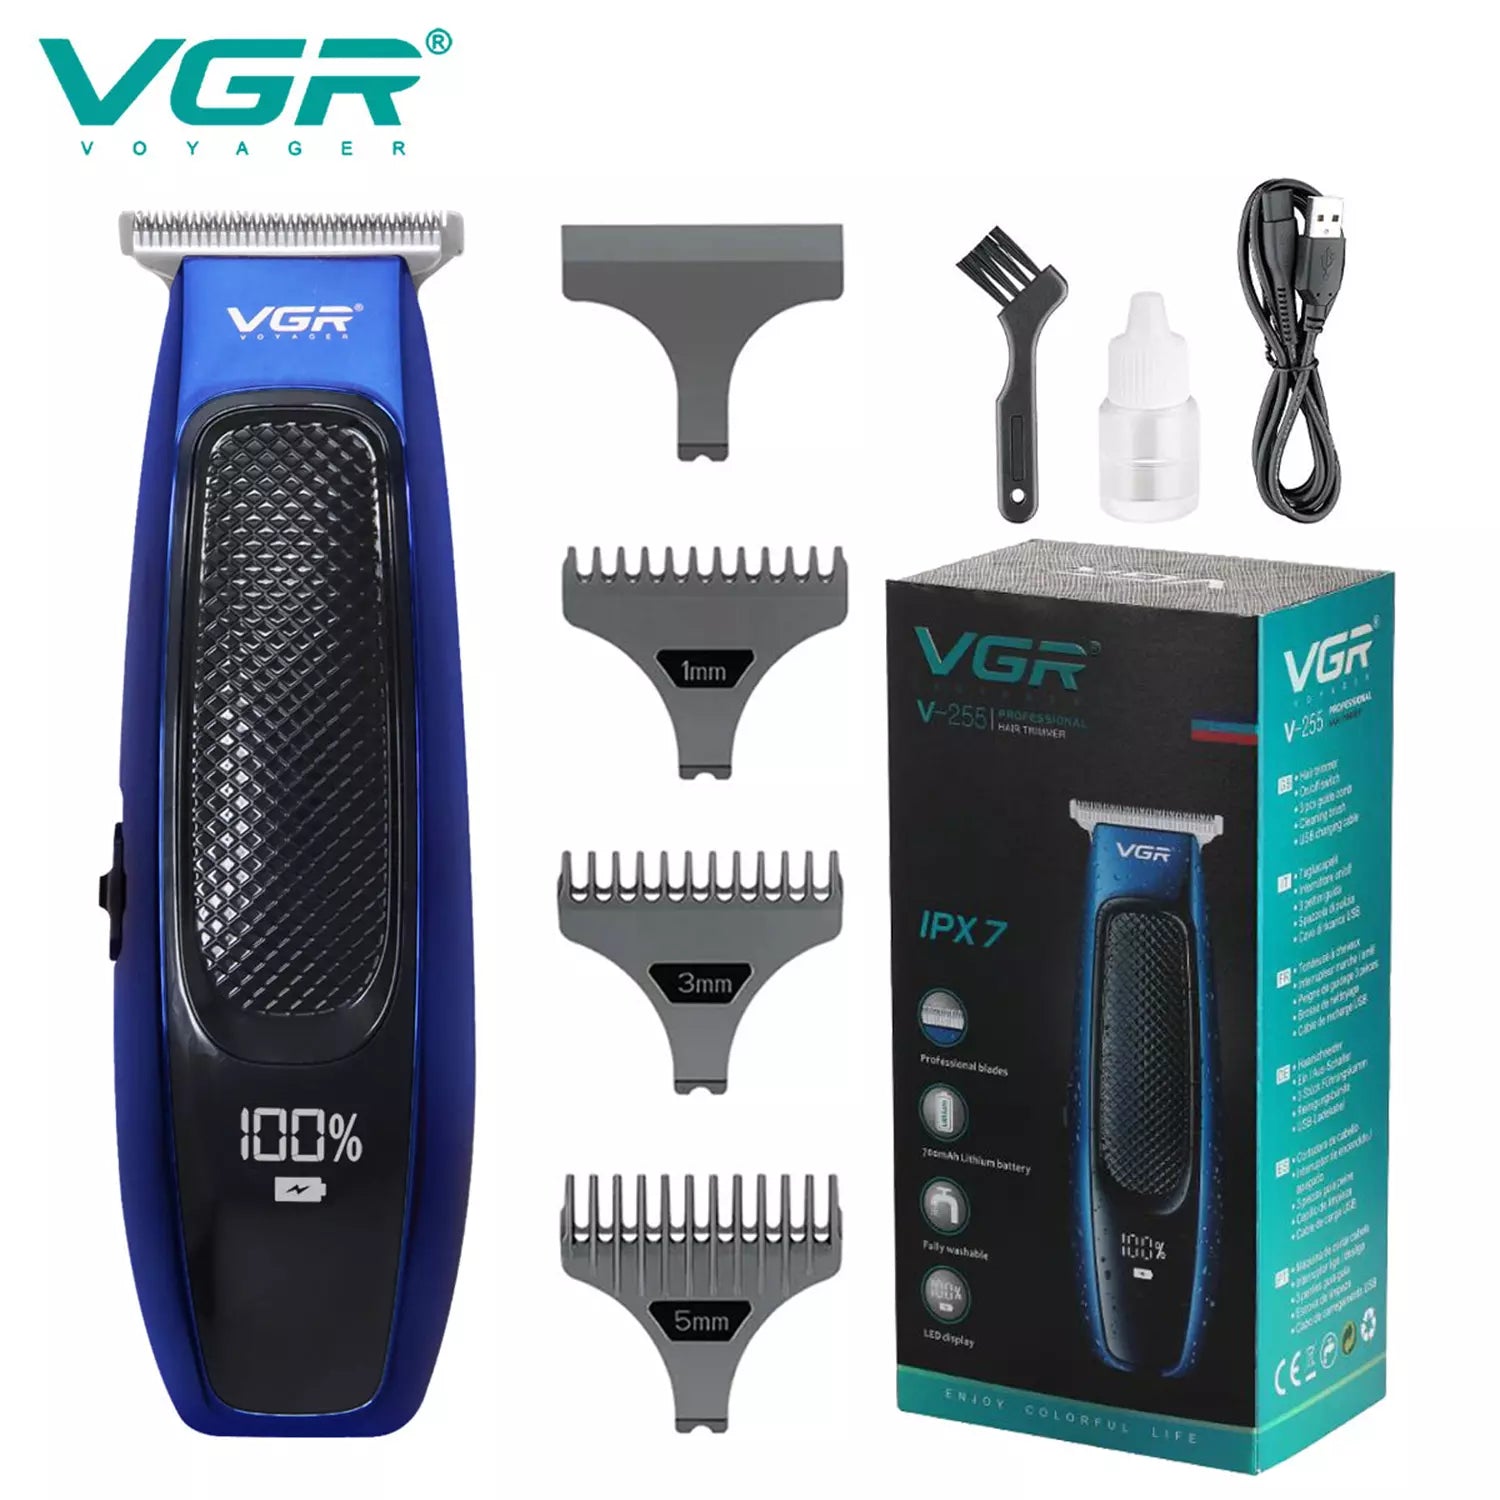 VGR V-255 IPX7 Waterproof Hair Trimmer For Men